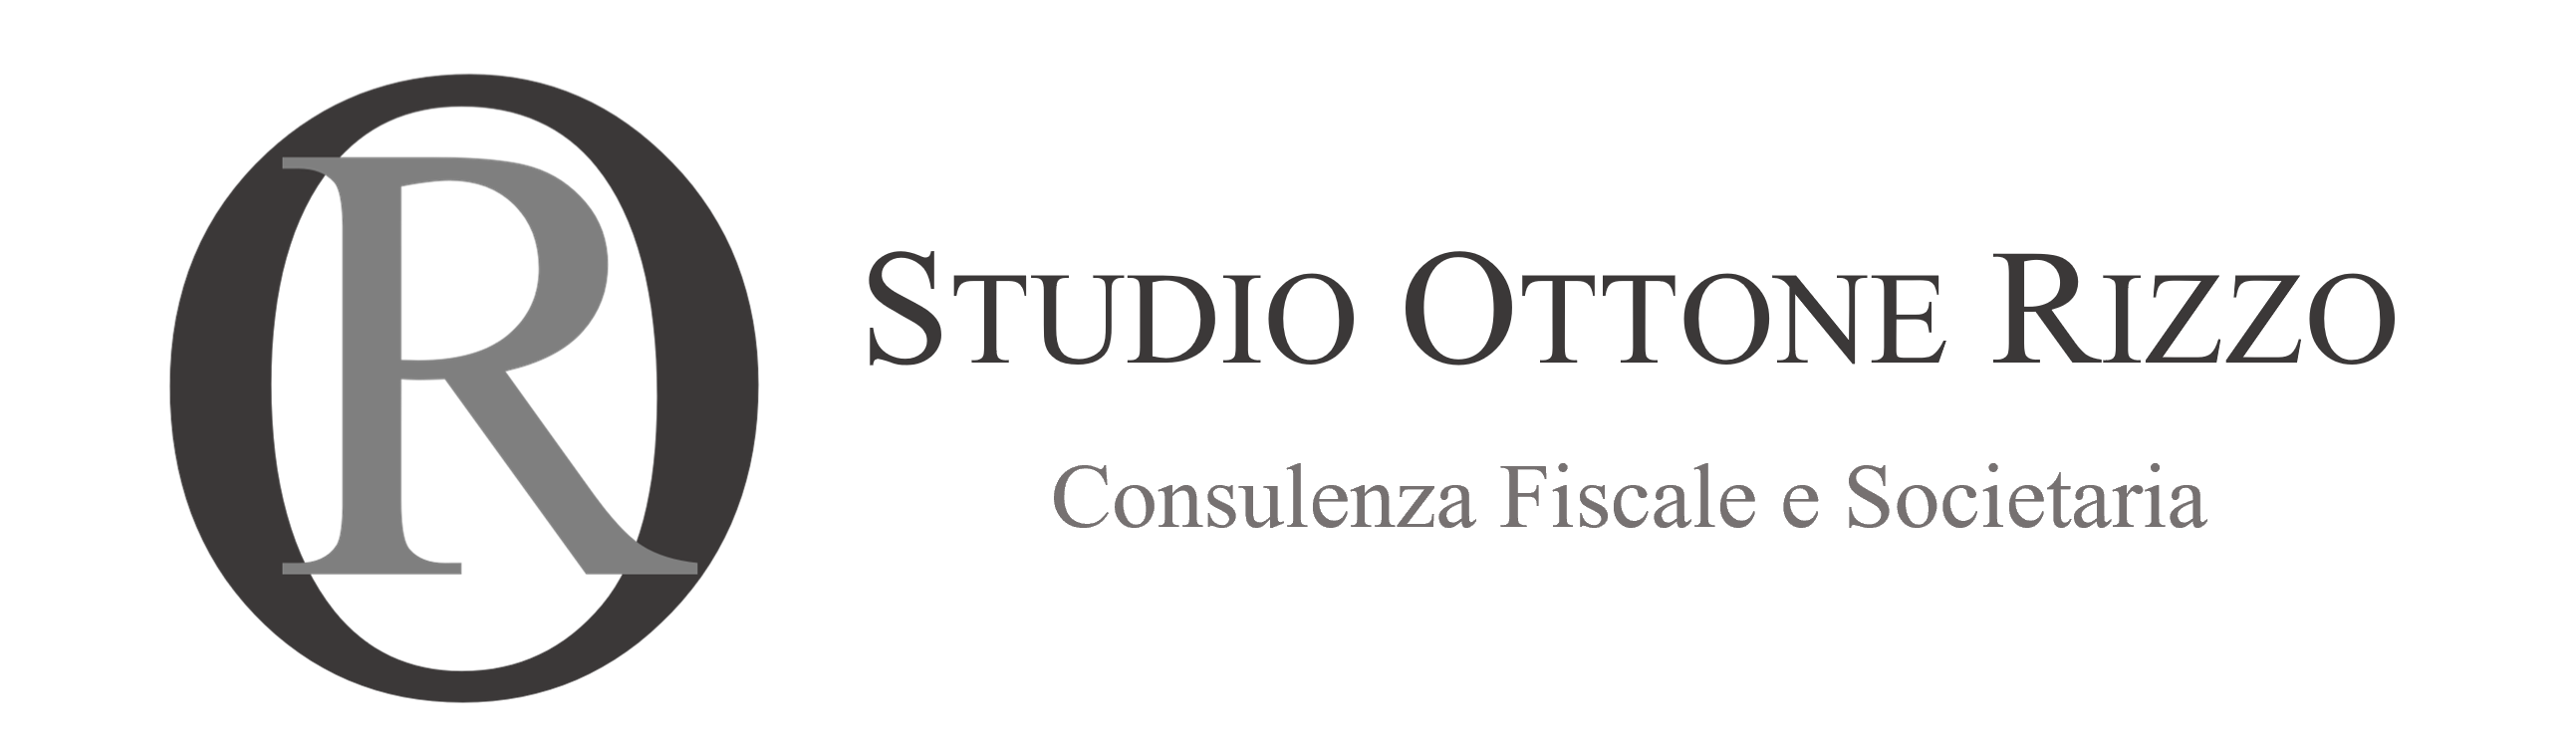 Studio Ottone Rizzo